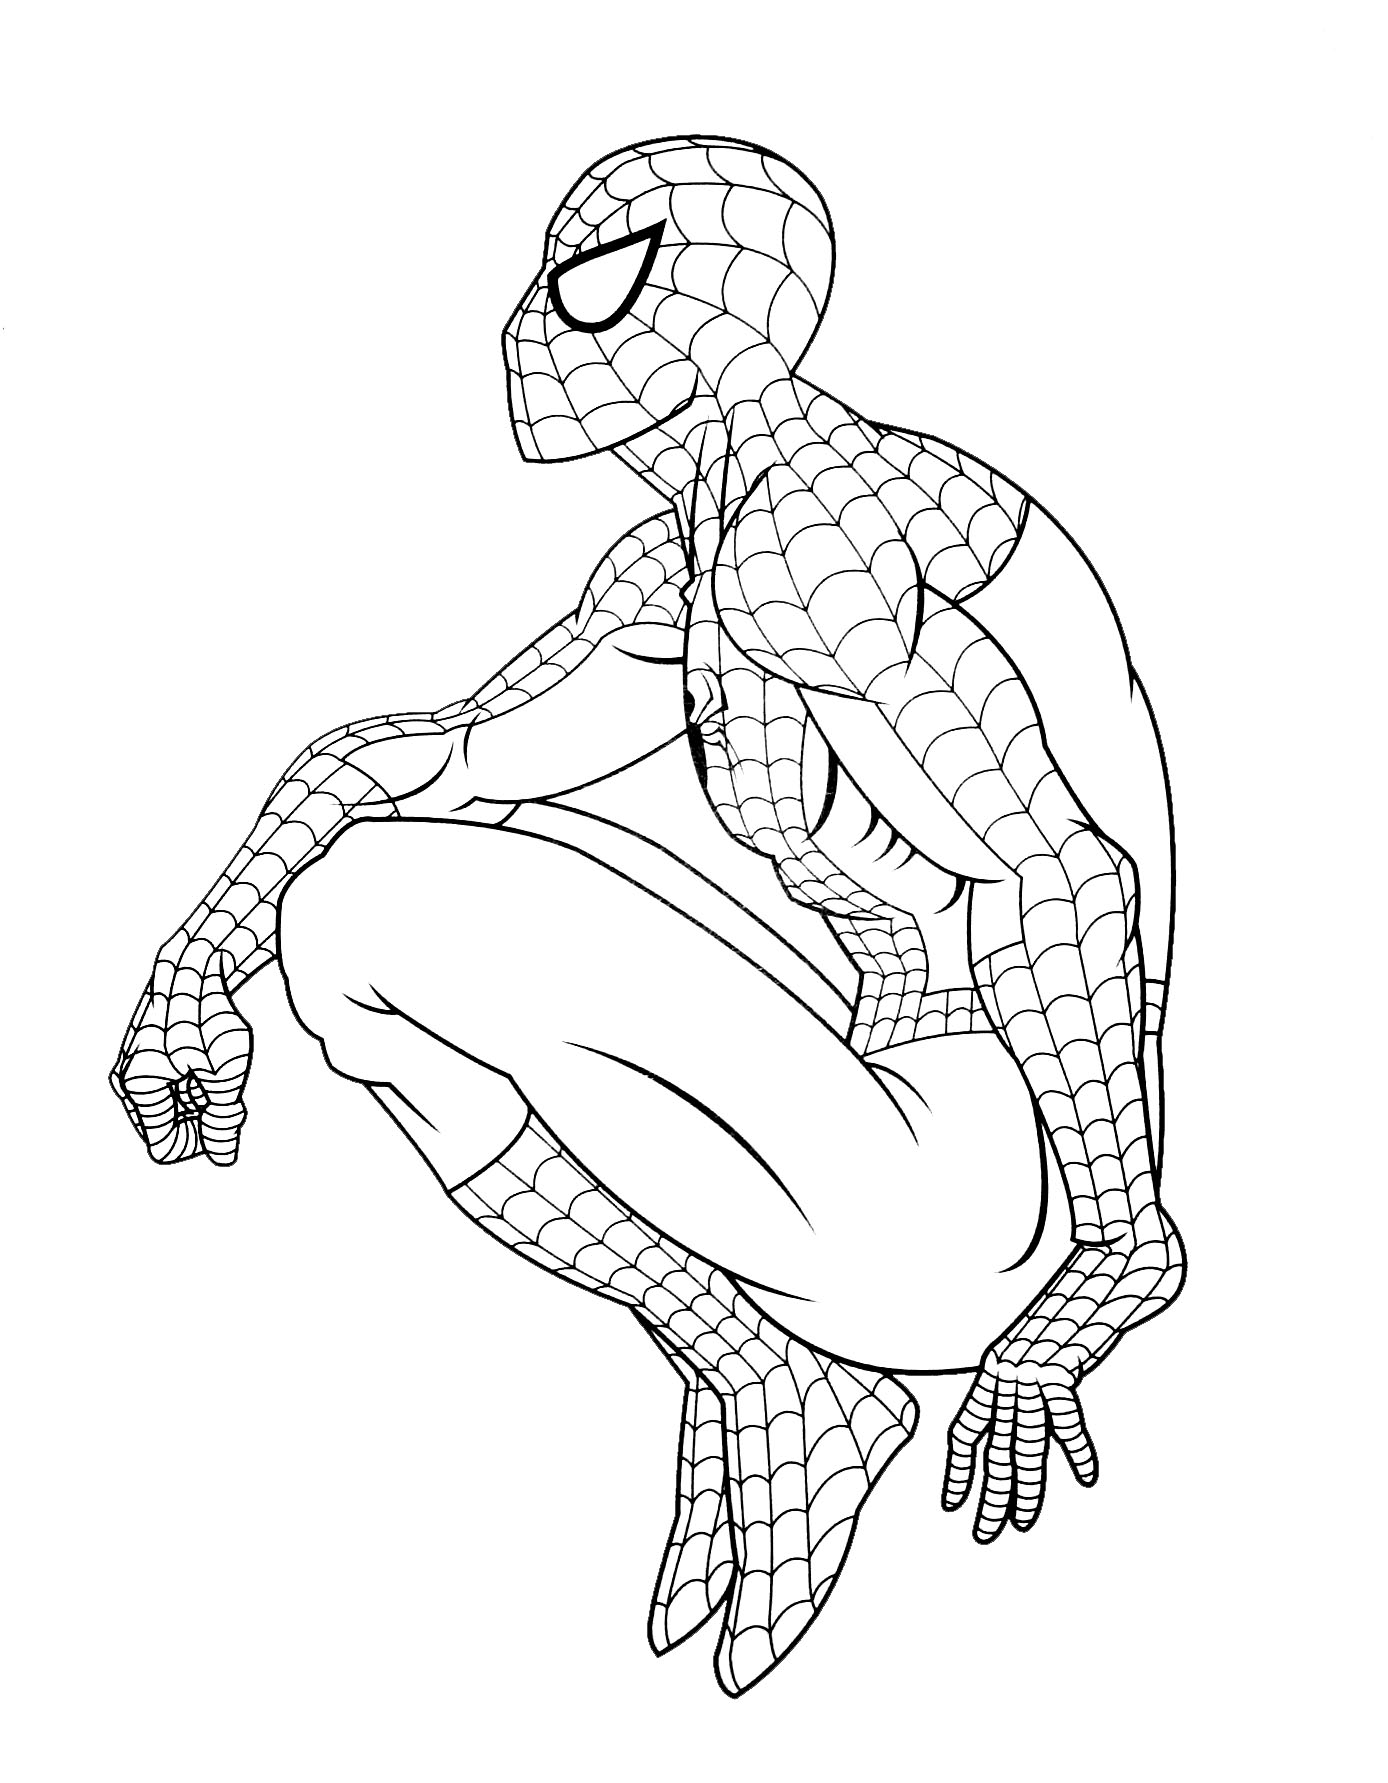 desenho para colorir do homem aranha